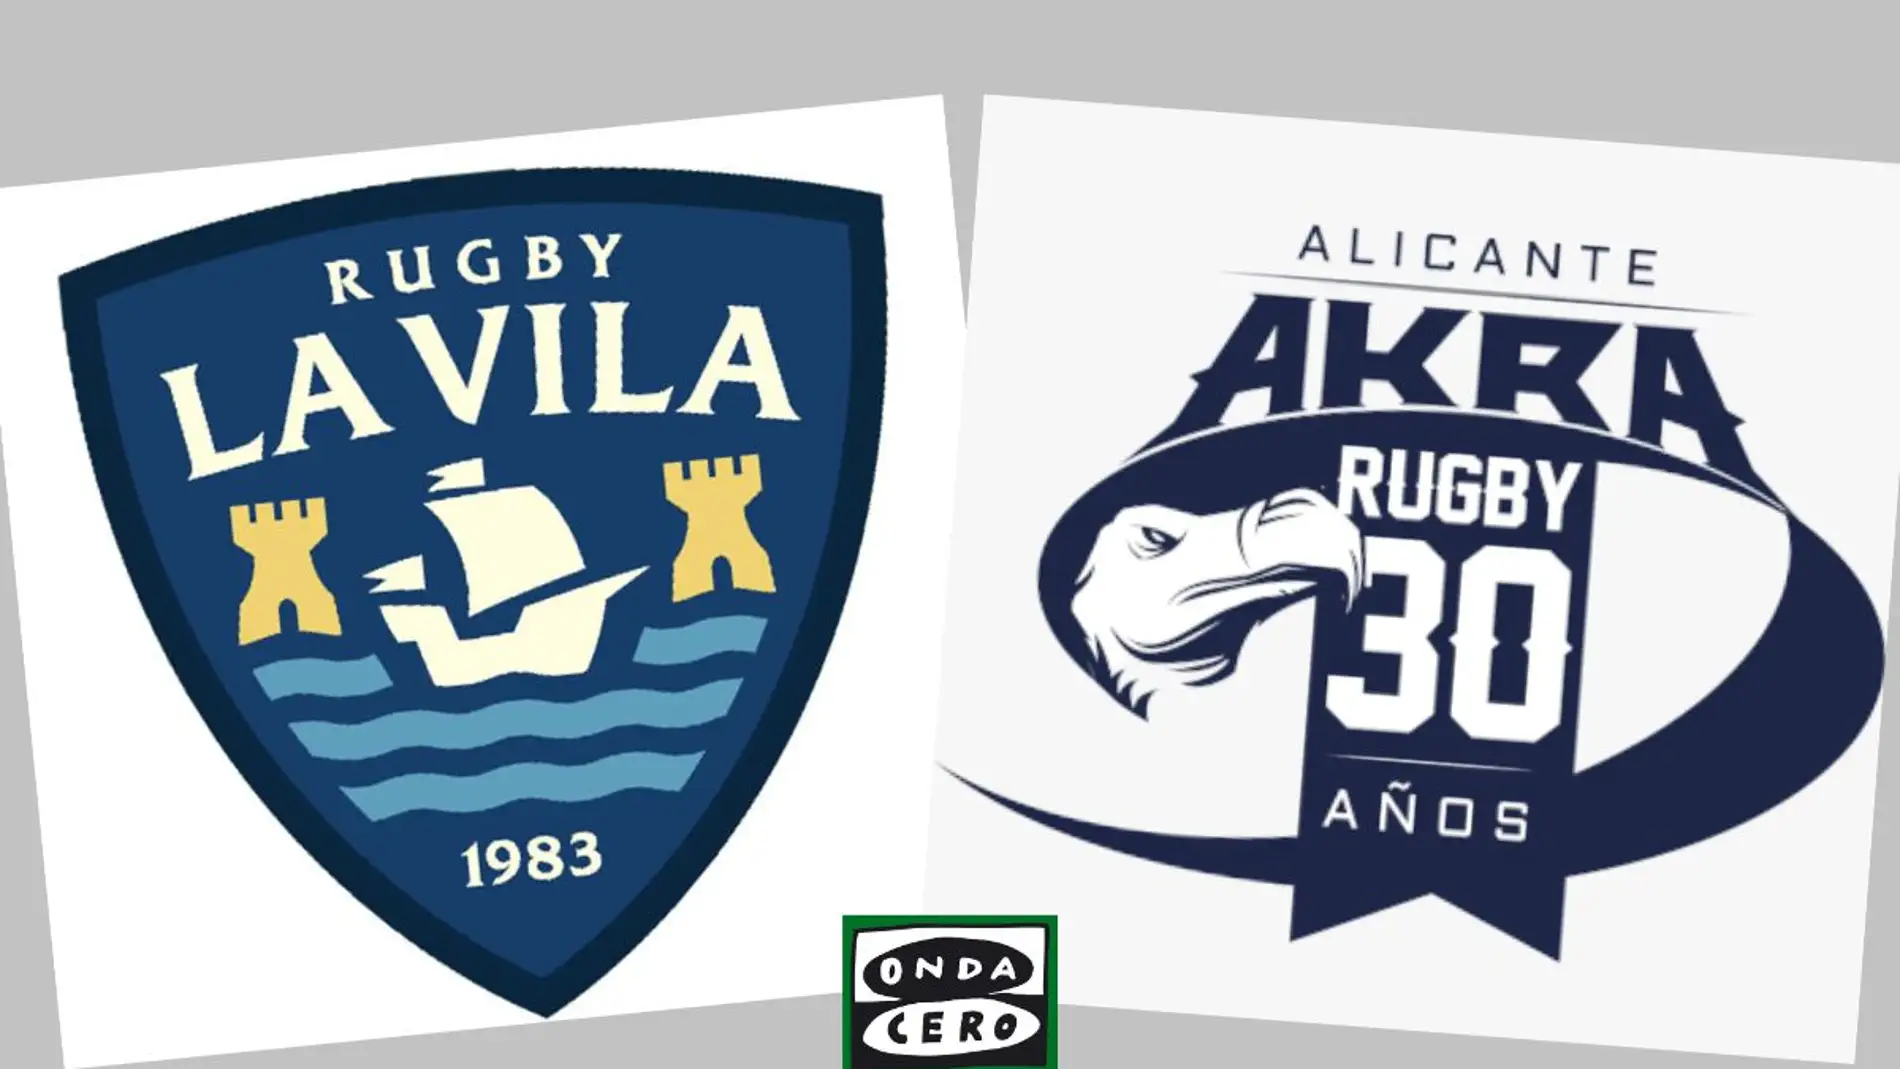 El Rugby La Vila femenino forma dos equipos en S-16 y S-18 gracias a su acuerdo con el Akra Leuka